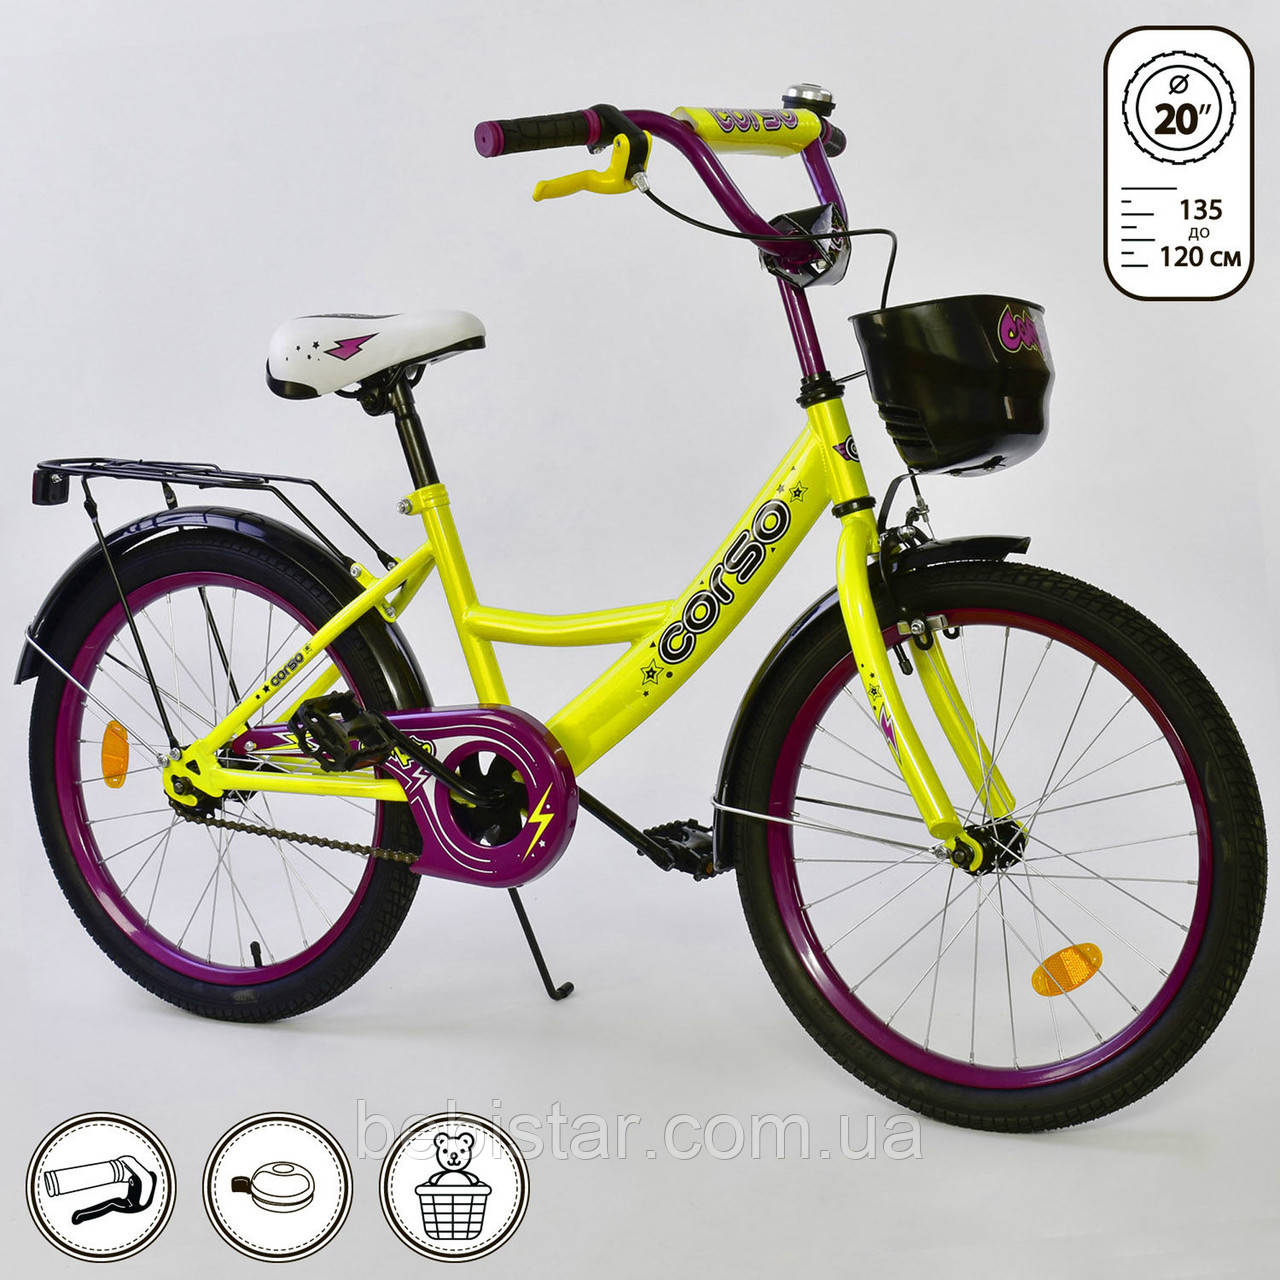 Дитячий двоколісний велосипед жовтий, підніжка, ручне гальмо Corso 20" дітям 6-9 років